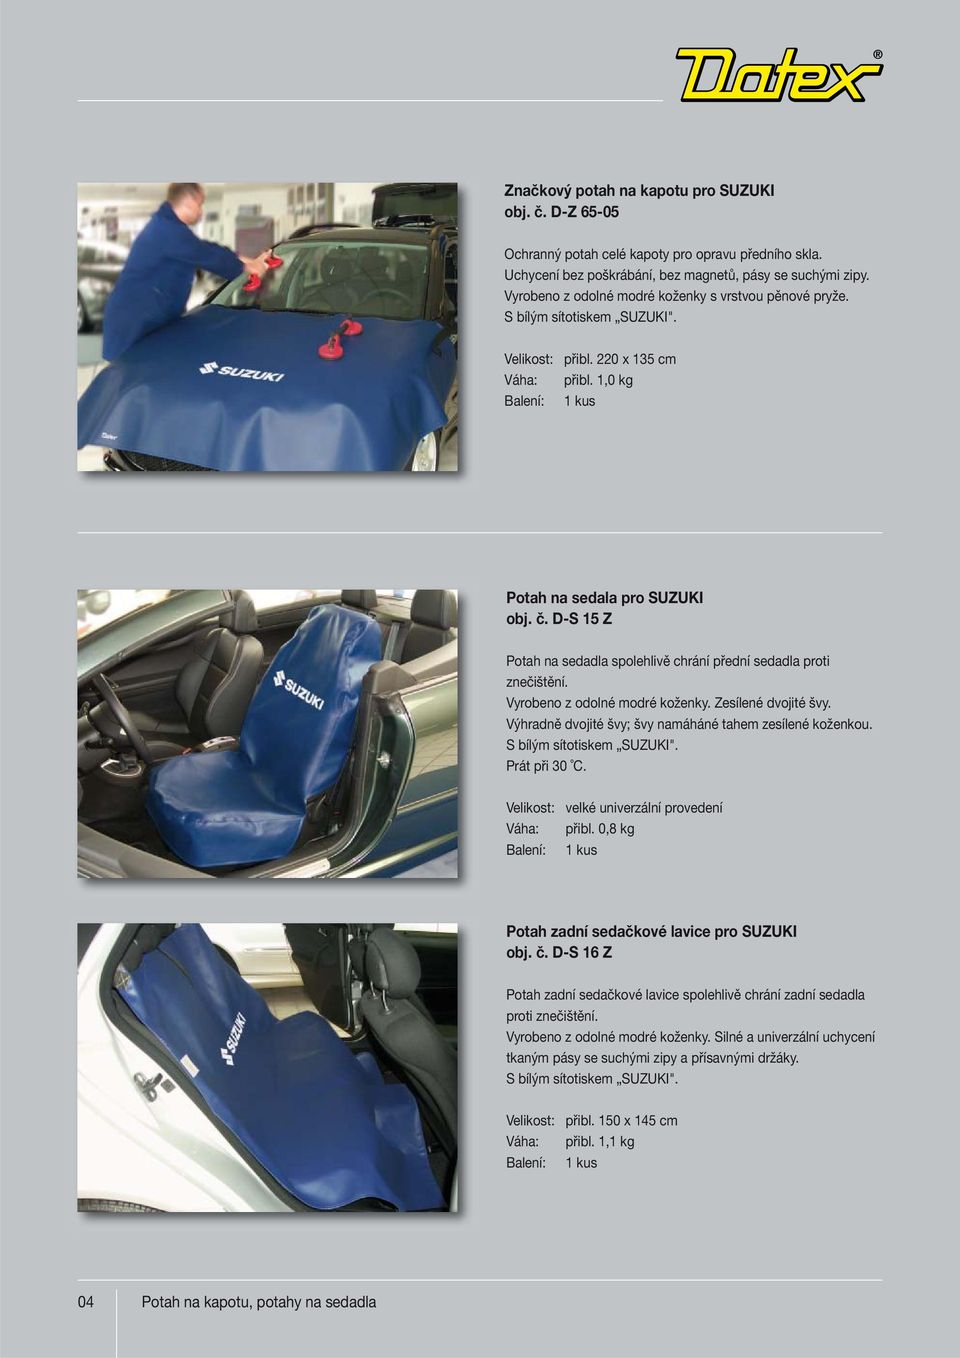 D-S 15 Z Potah na sedadla spolehlivě chrání přední sedadla proti znečištění. Vyrobeno z odolné modré koženky. Zesílené dvojité švy. Výhradně dvojité švy; švy namáháné tahem zesílené koženkou.